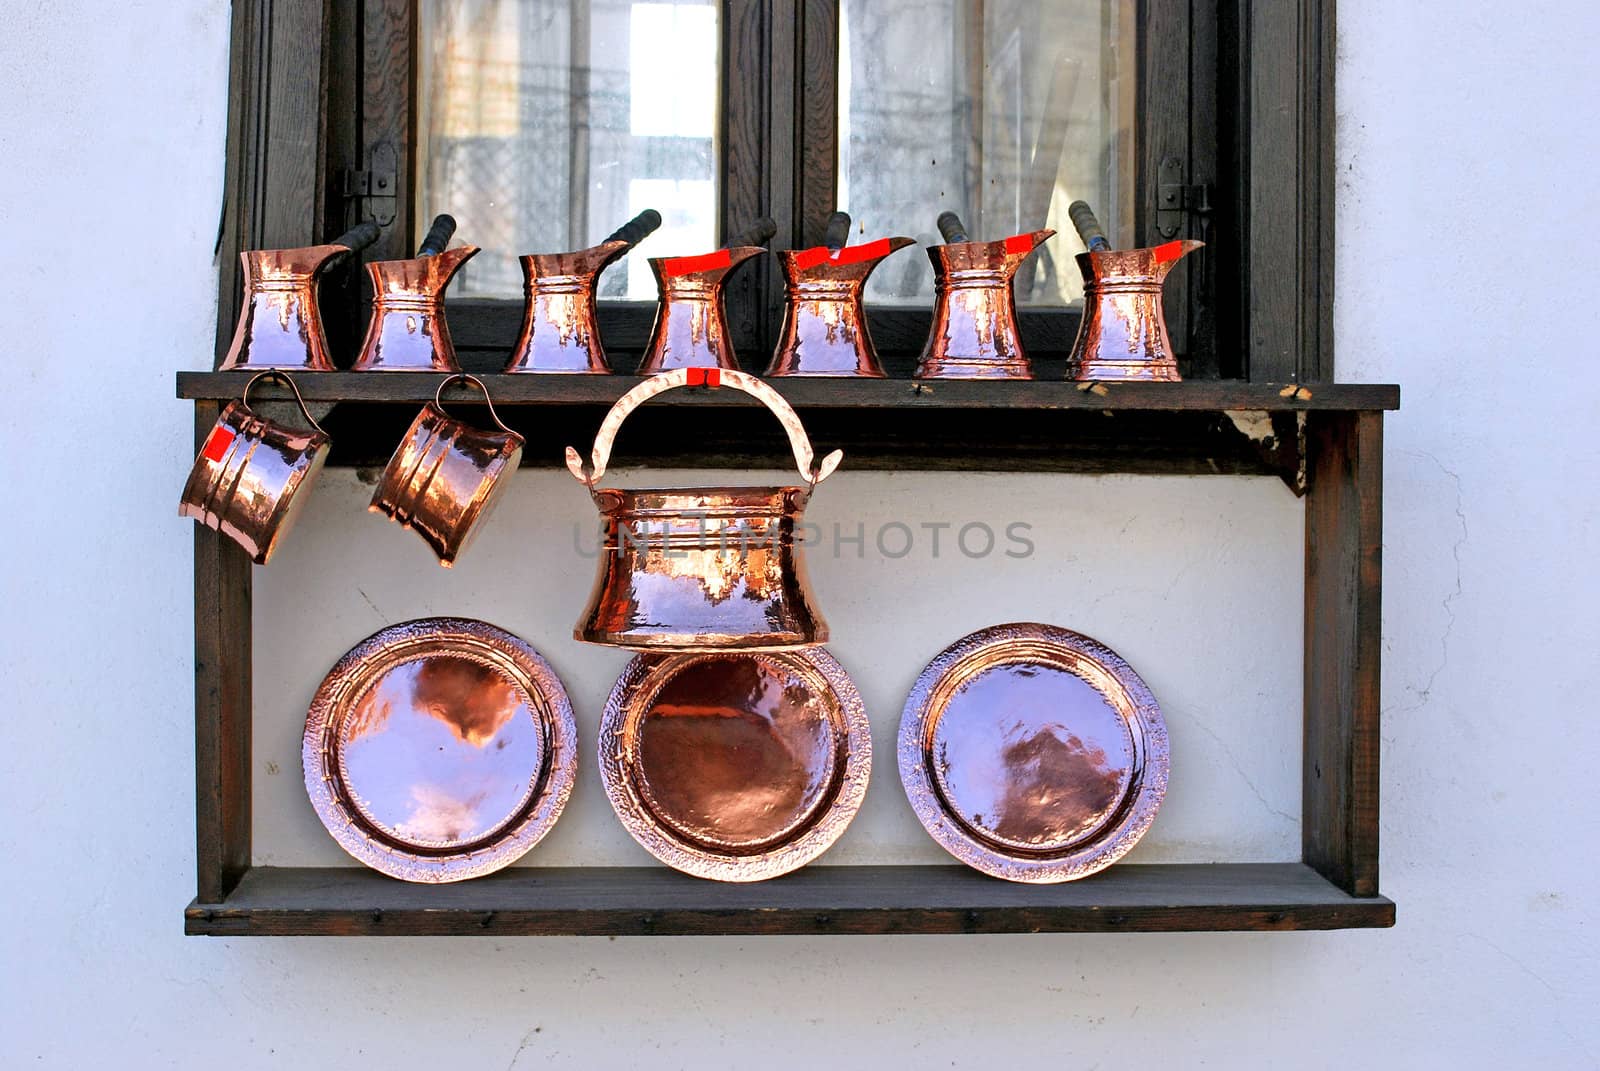 copper utensils on a wooden window